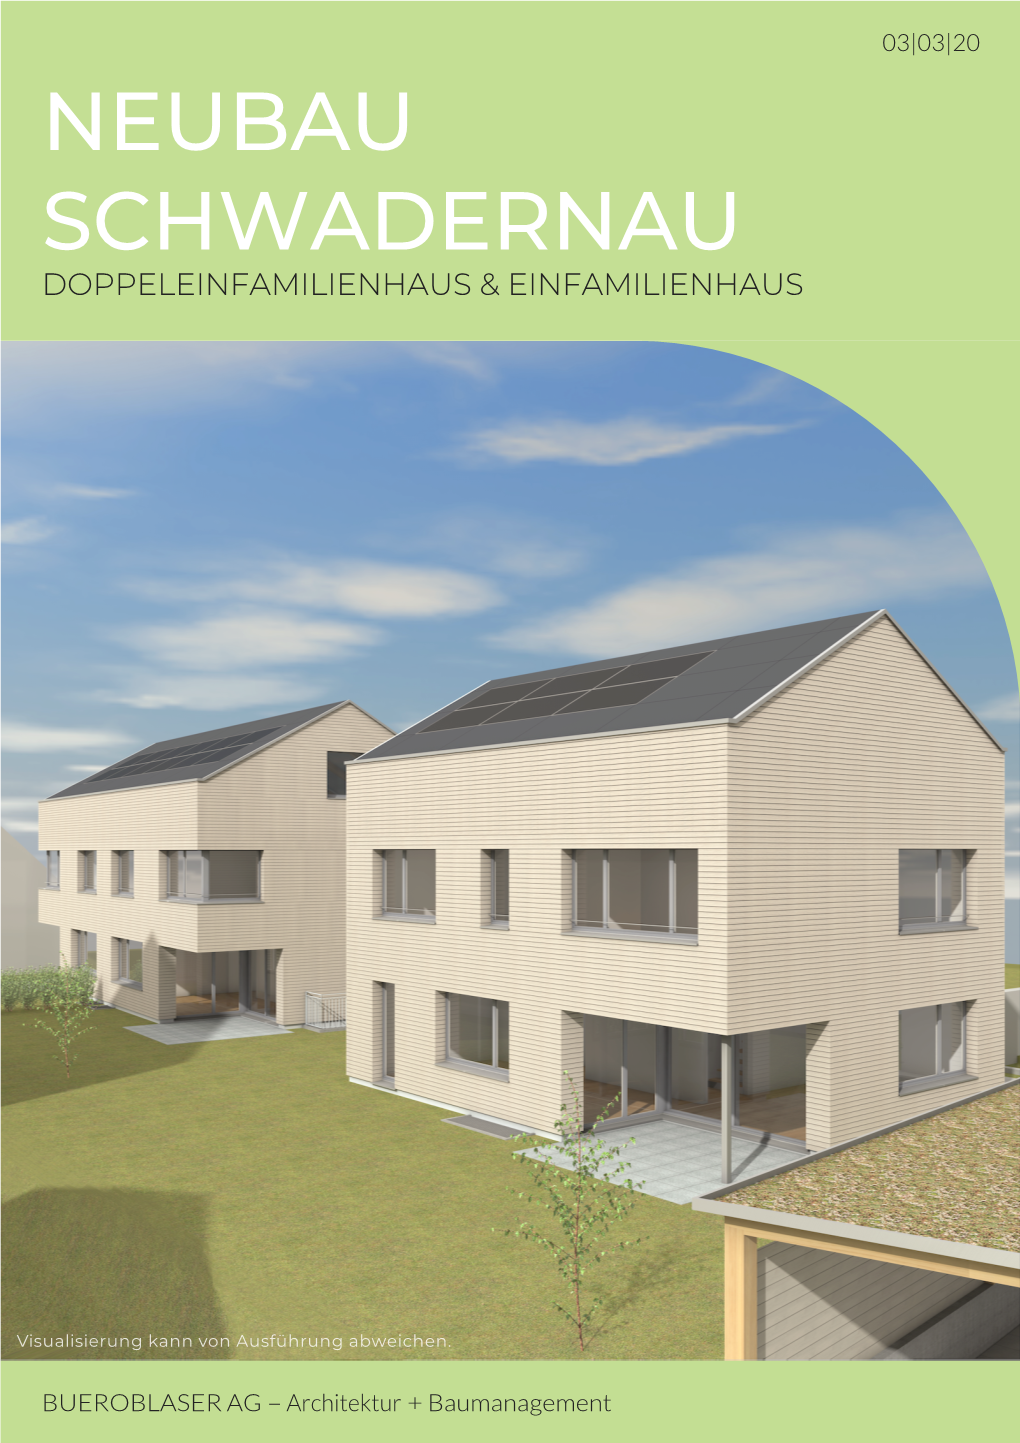 Neubau Schwadernau Doppeleinfamilienhaus & Einfamilienhaus